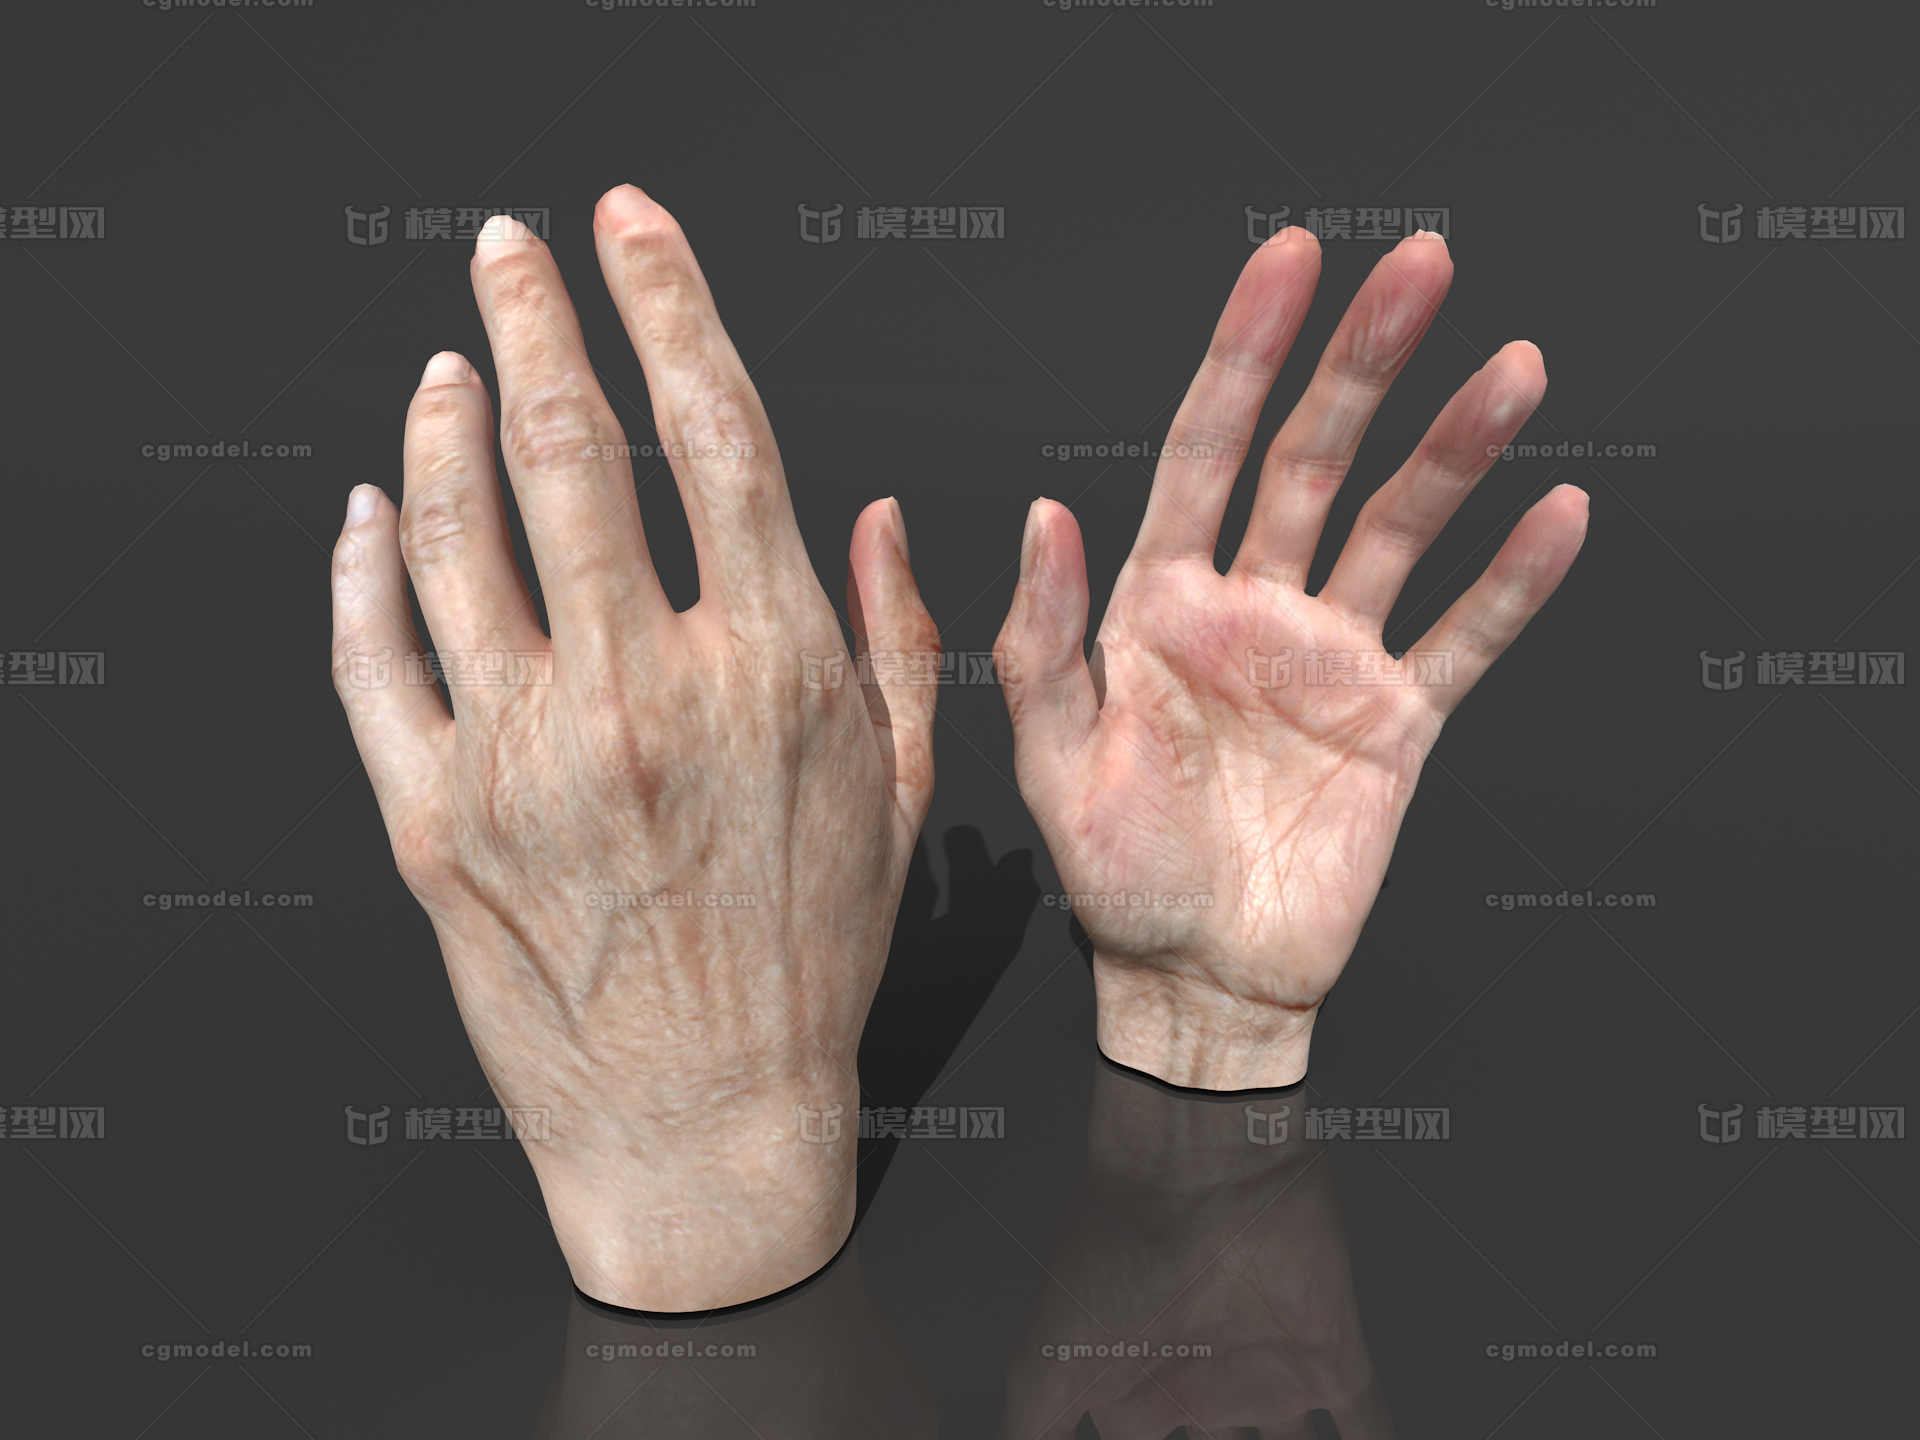 写实手手解剖手掌手指老人手男性手女人手手掌内模型 人体器官模型库 Obj Obj Mtl 模型下载 Cg模型网